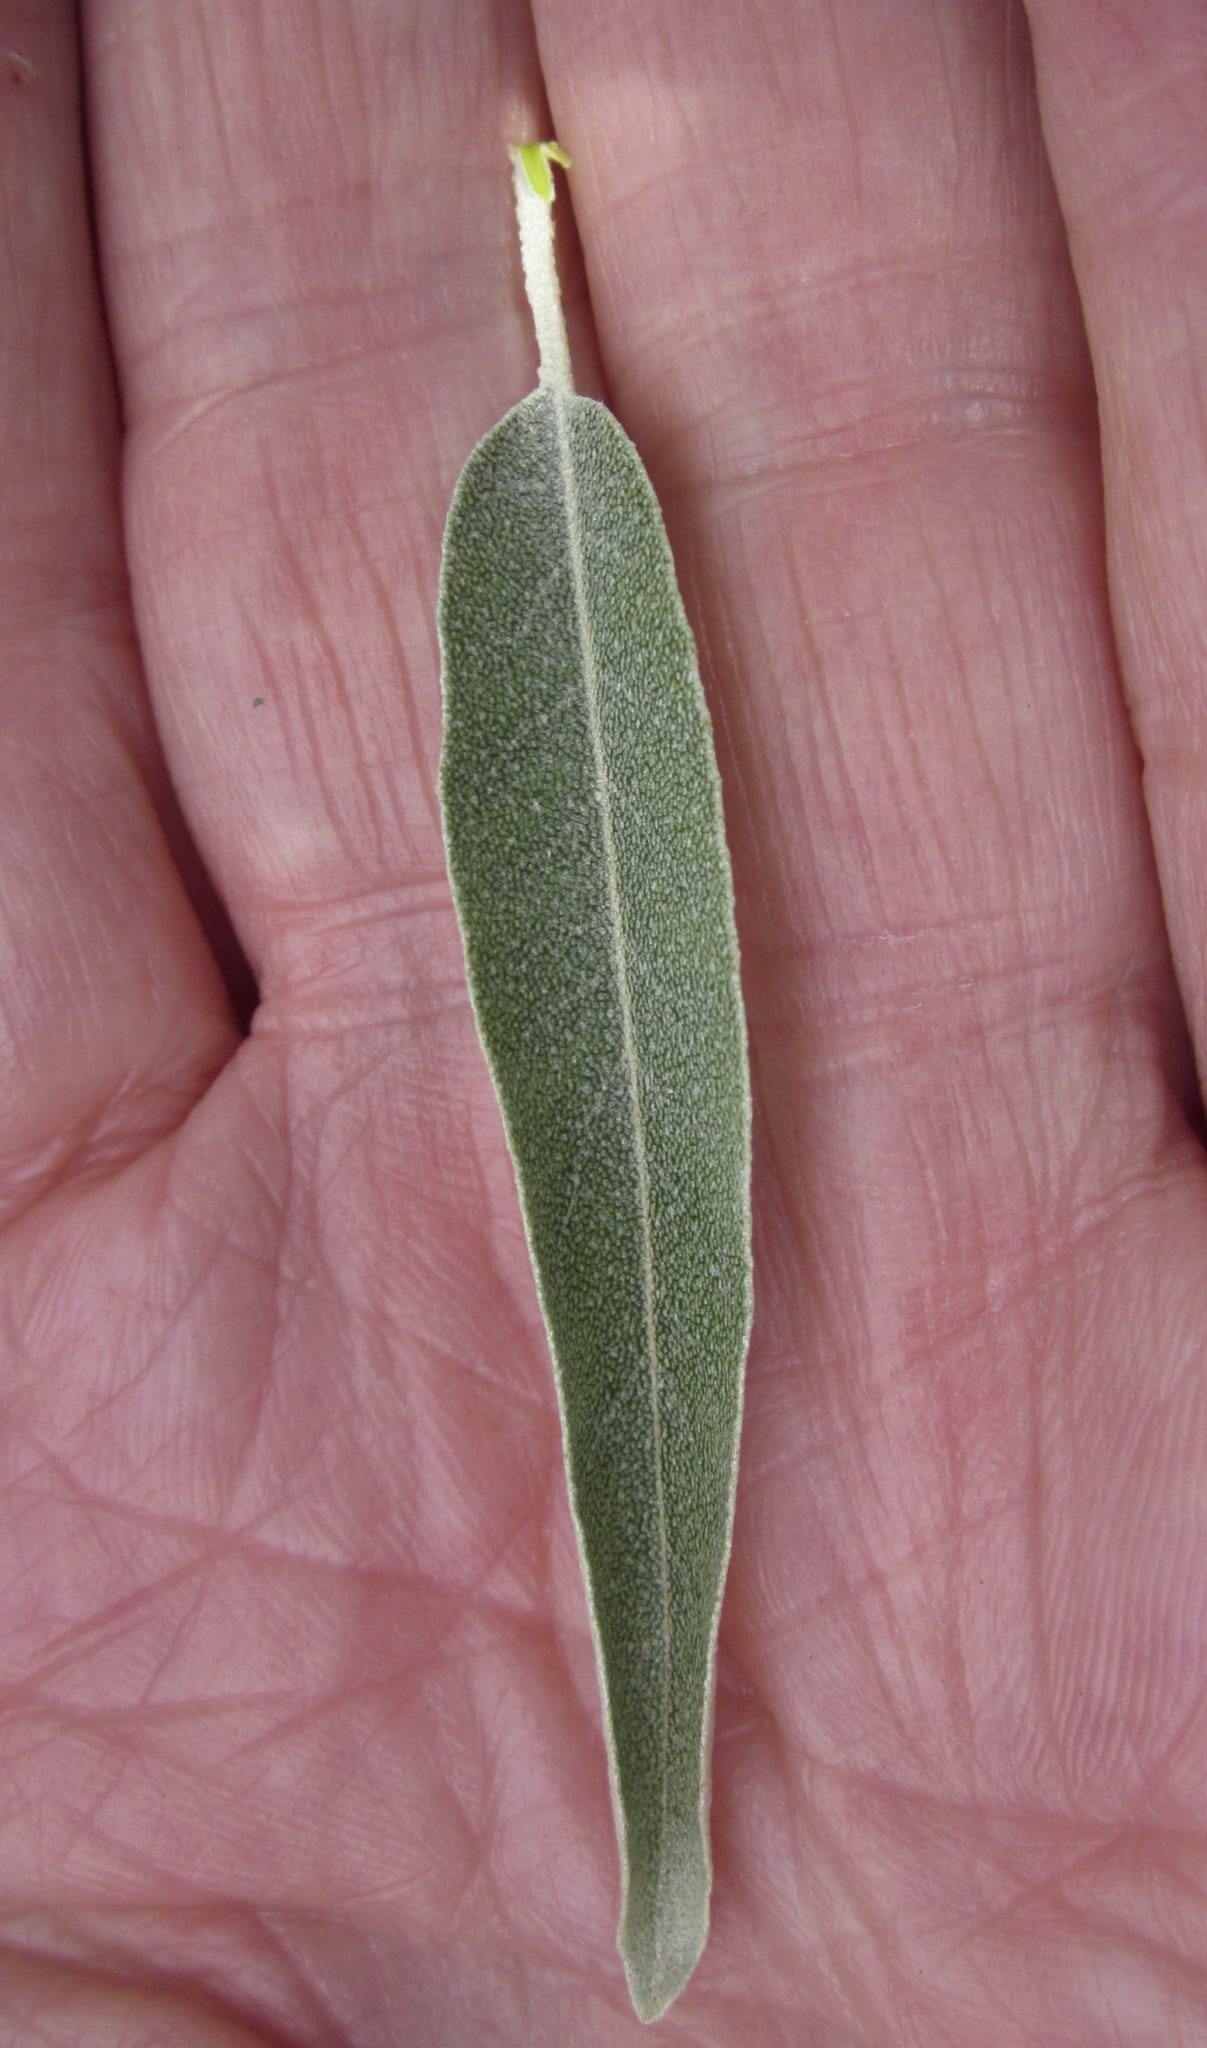 Oleaster leaves